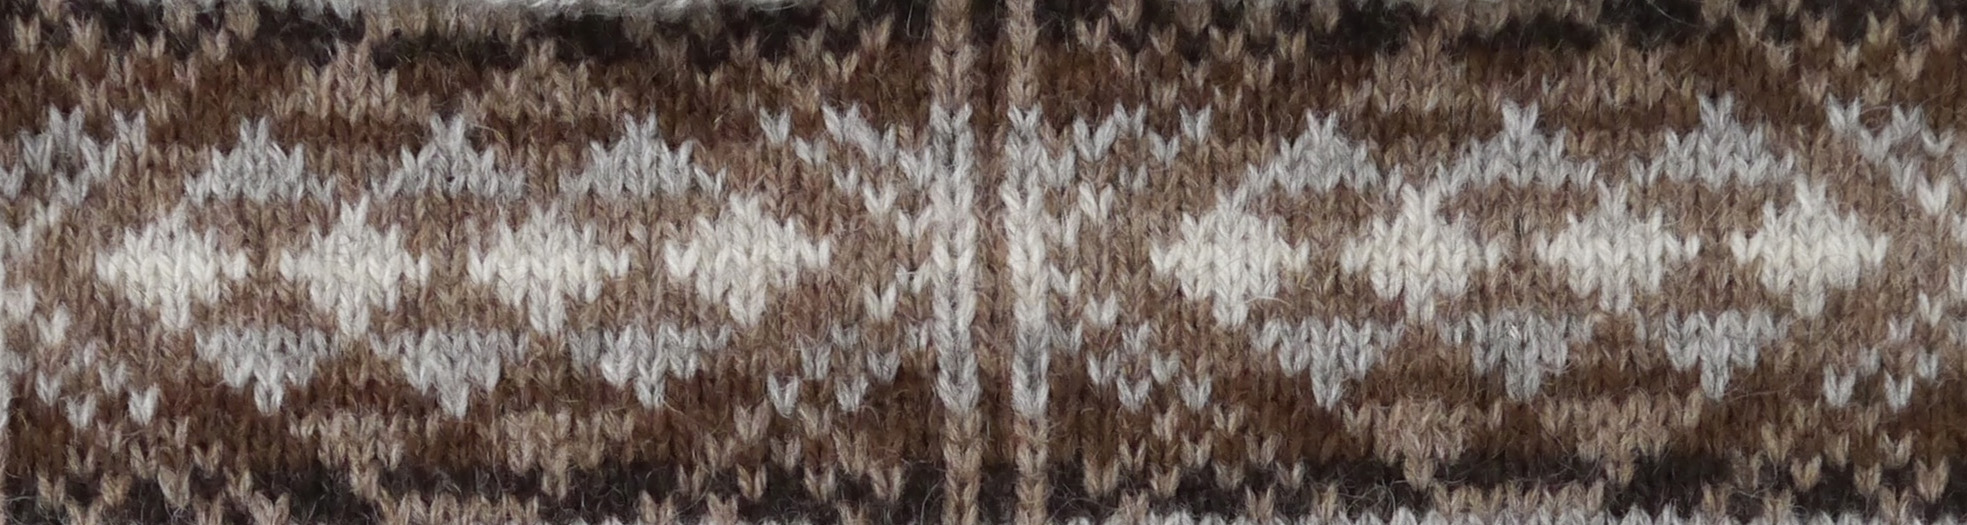 Foula Wool knitting pattern 2